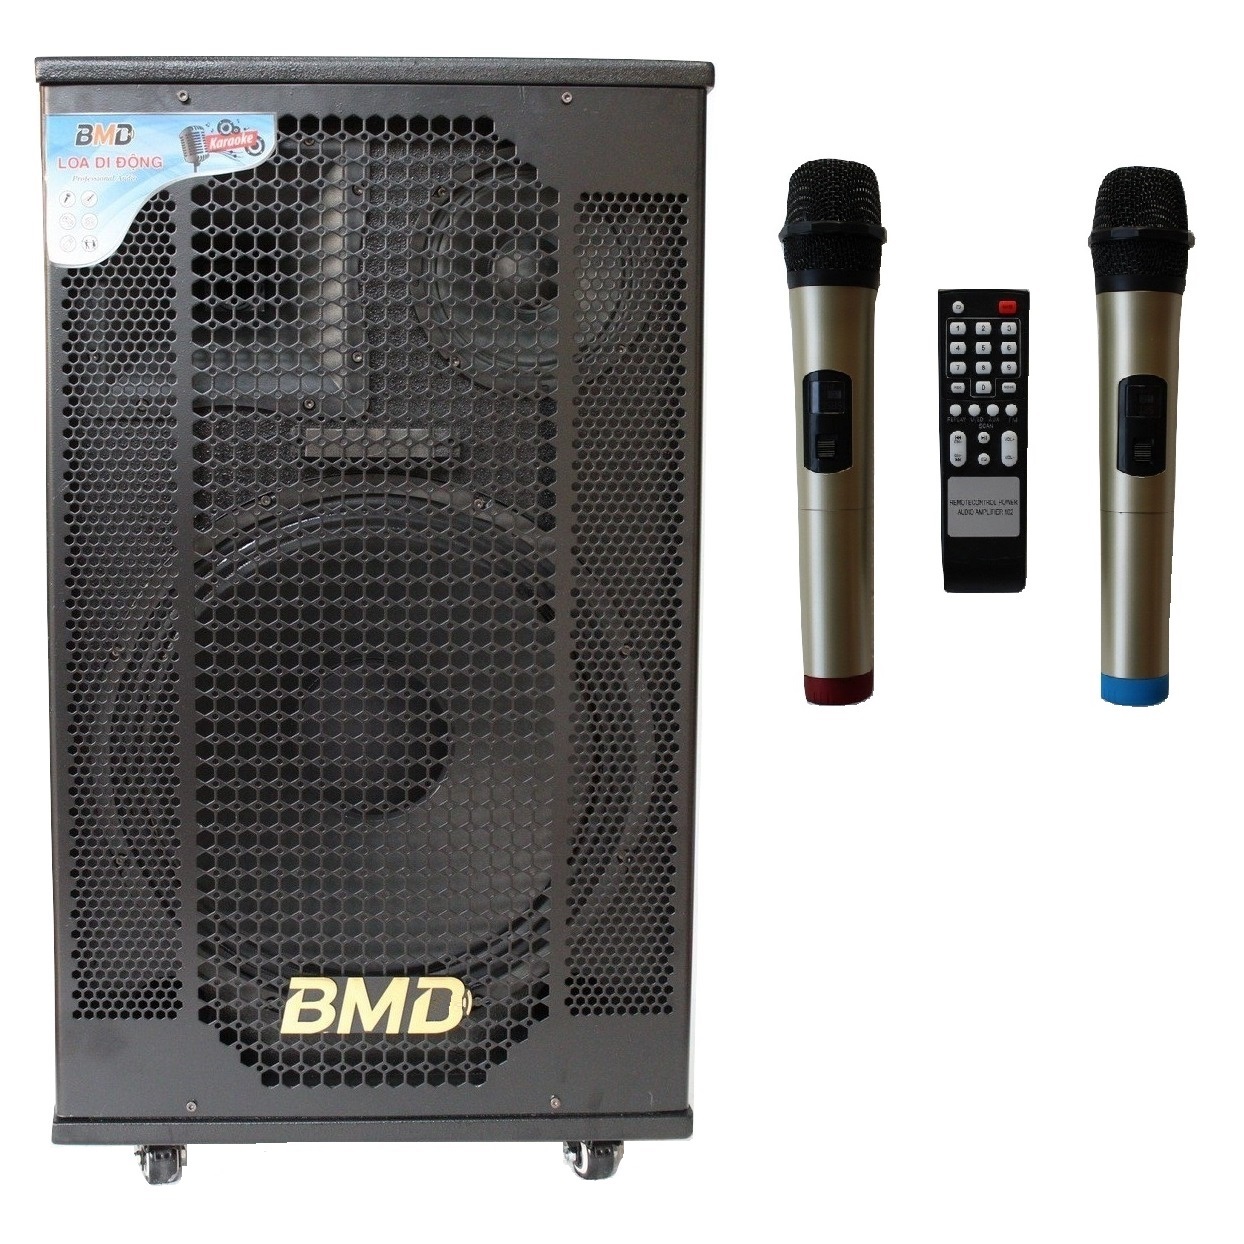 Loa Kéo Di Động Karaoke Bass 40 BMD LK-40B60 (800W) 4 Tấc - Màu Ngẫu Nhiên - Chính Hãng